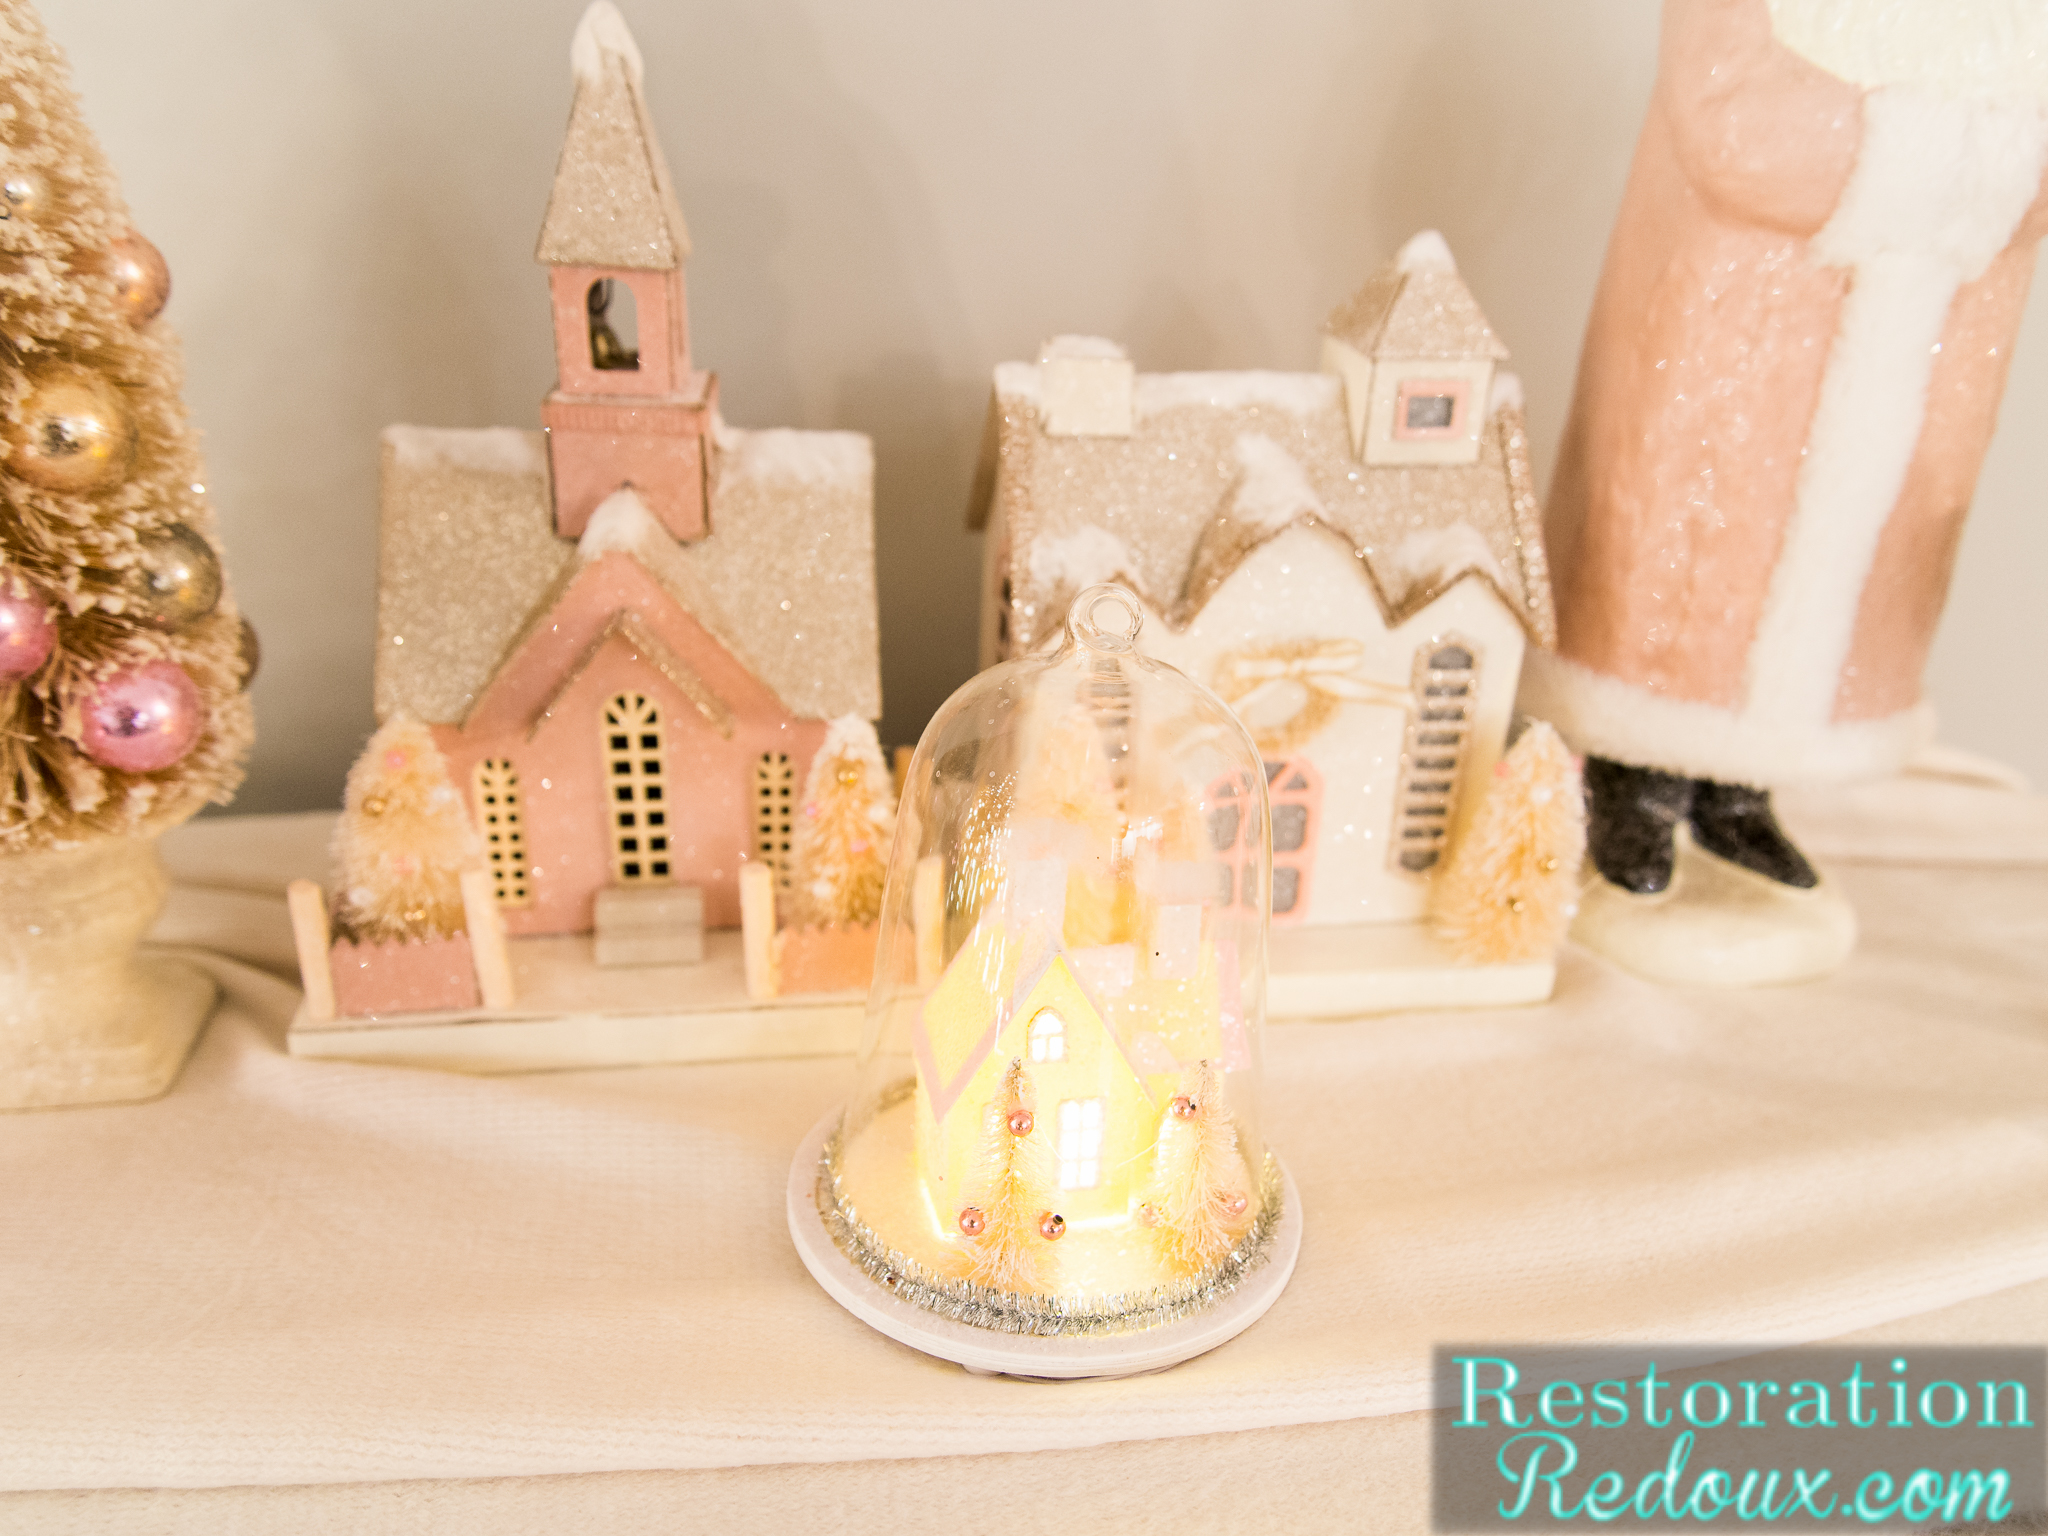 2016 Restoration Redoux Christmas Home Tour